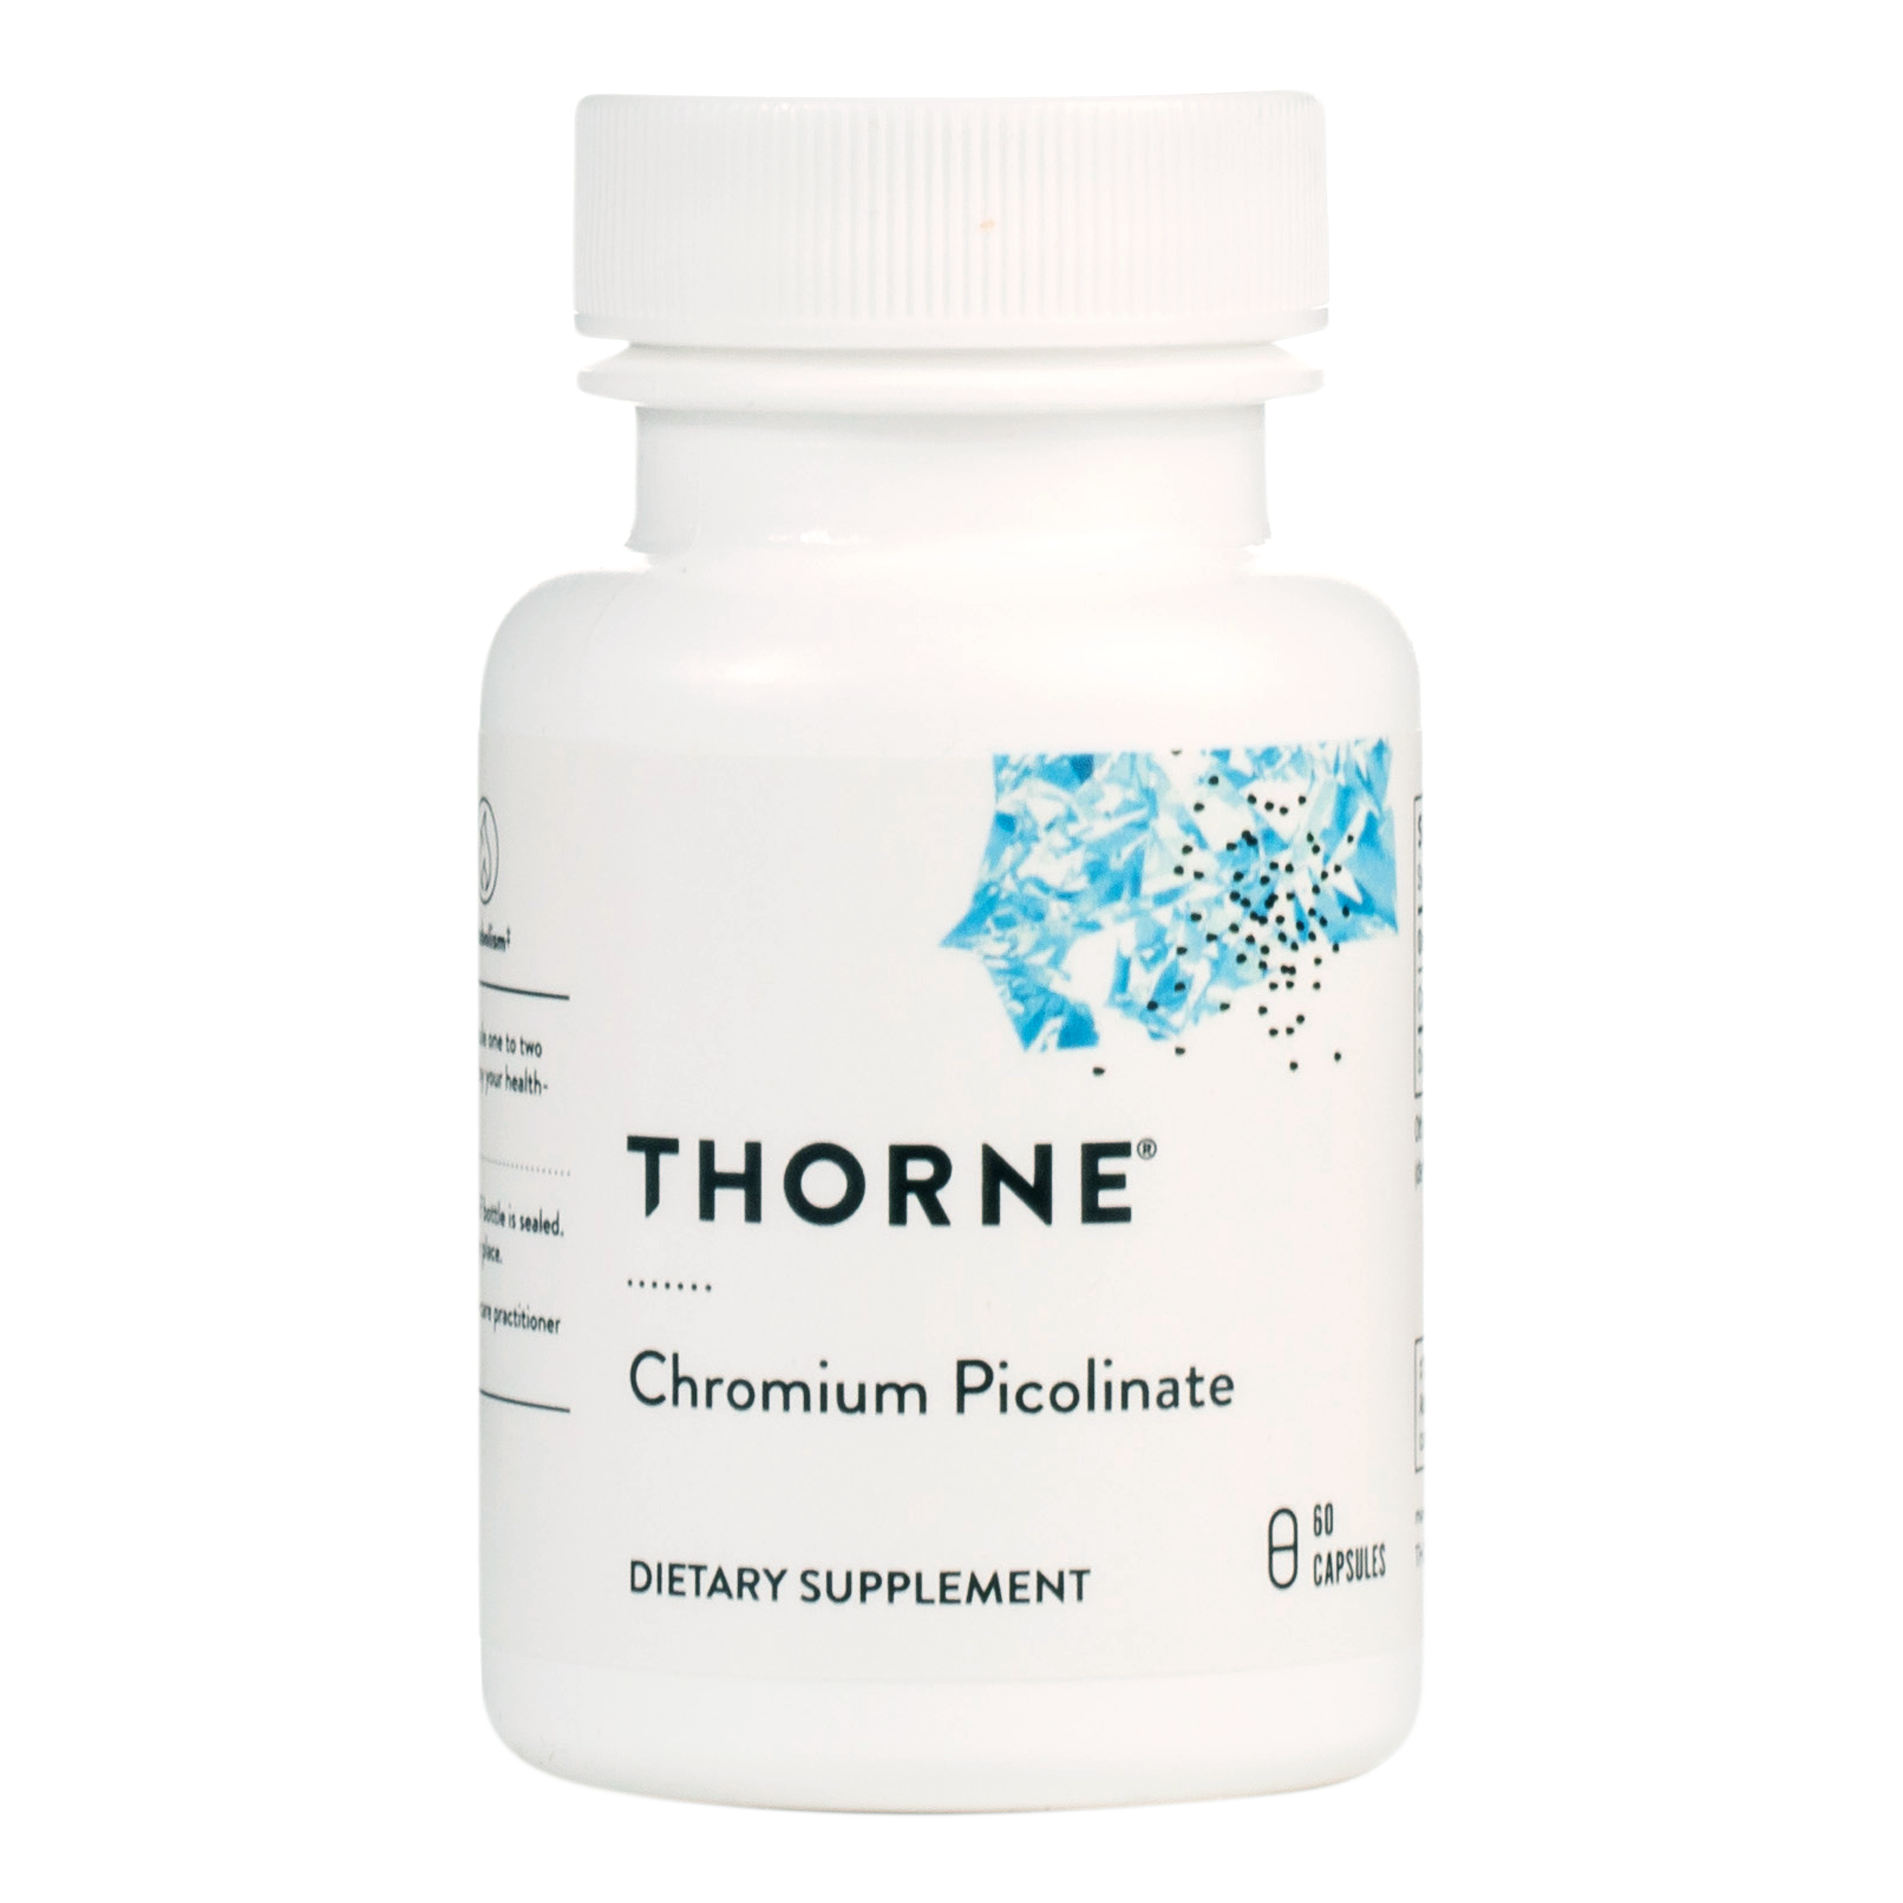 Thorne - Chromium Picolinate bottle